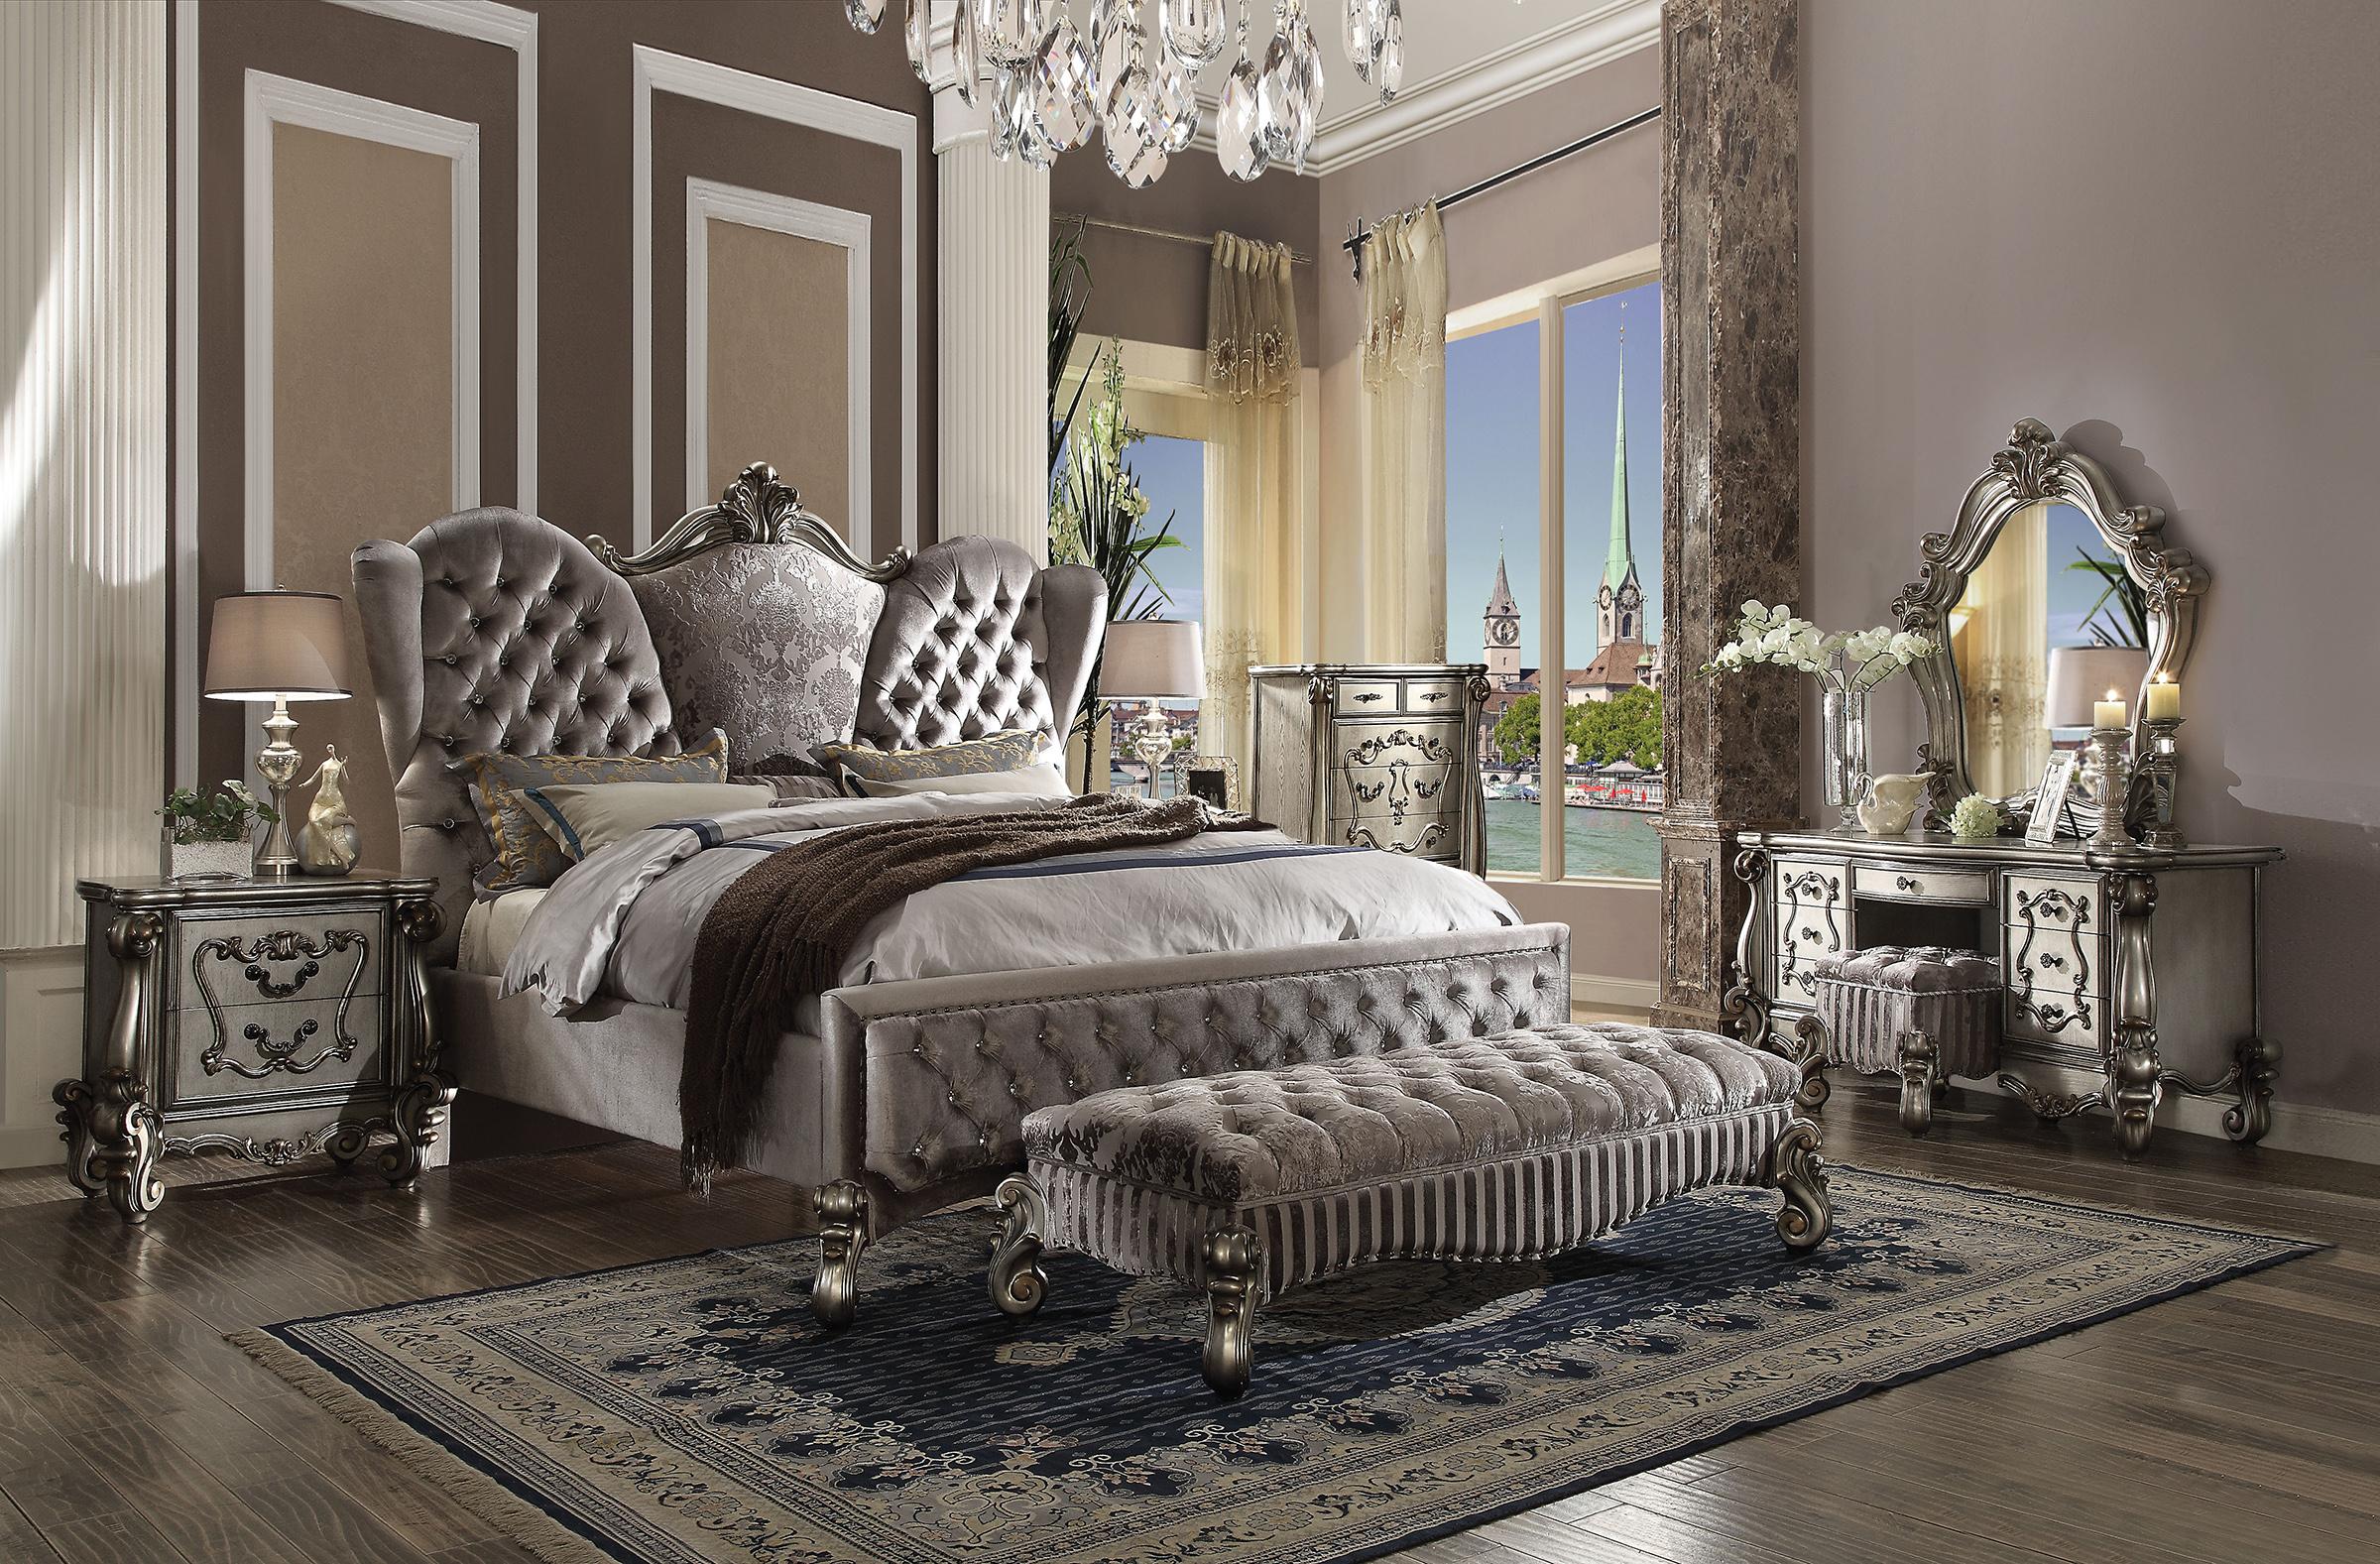 

    
Doline King Tufted Upholstered Bedroom Set 3Pcs Classic
